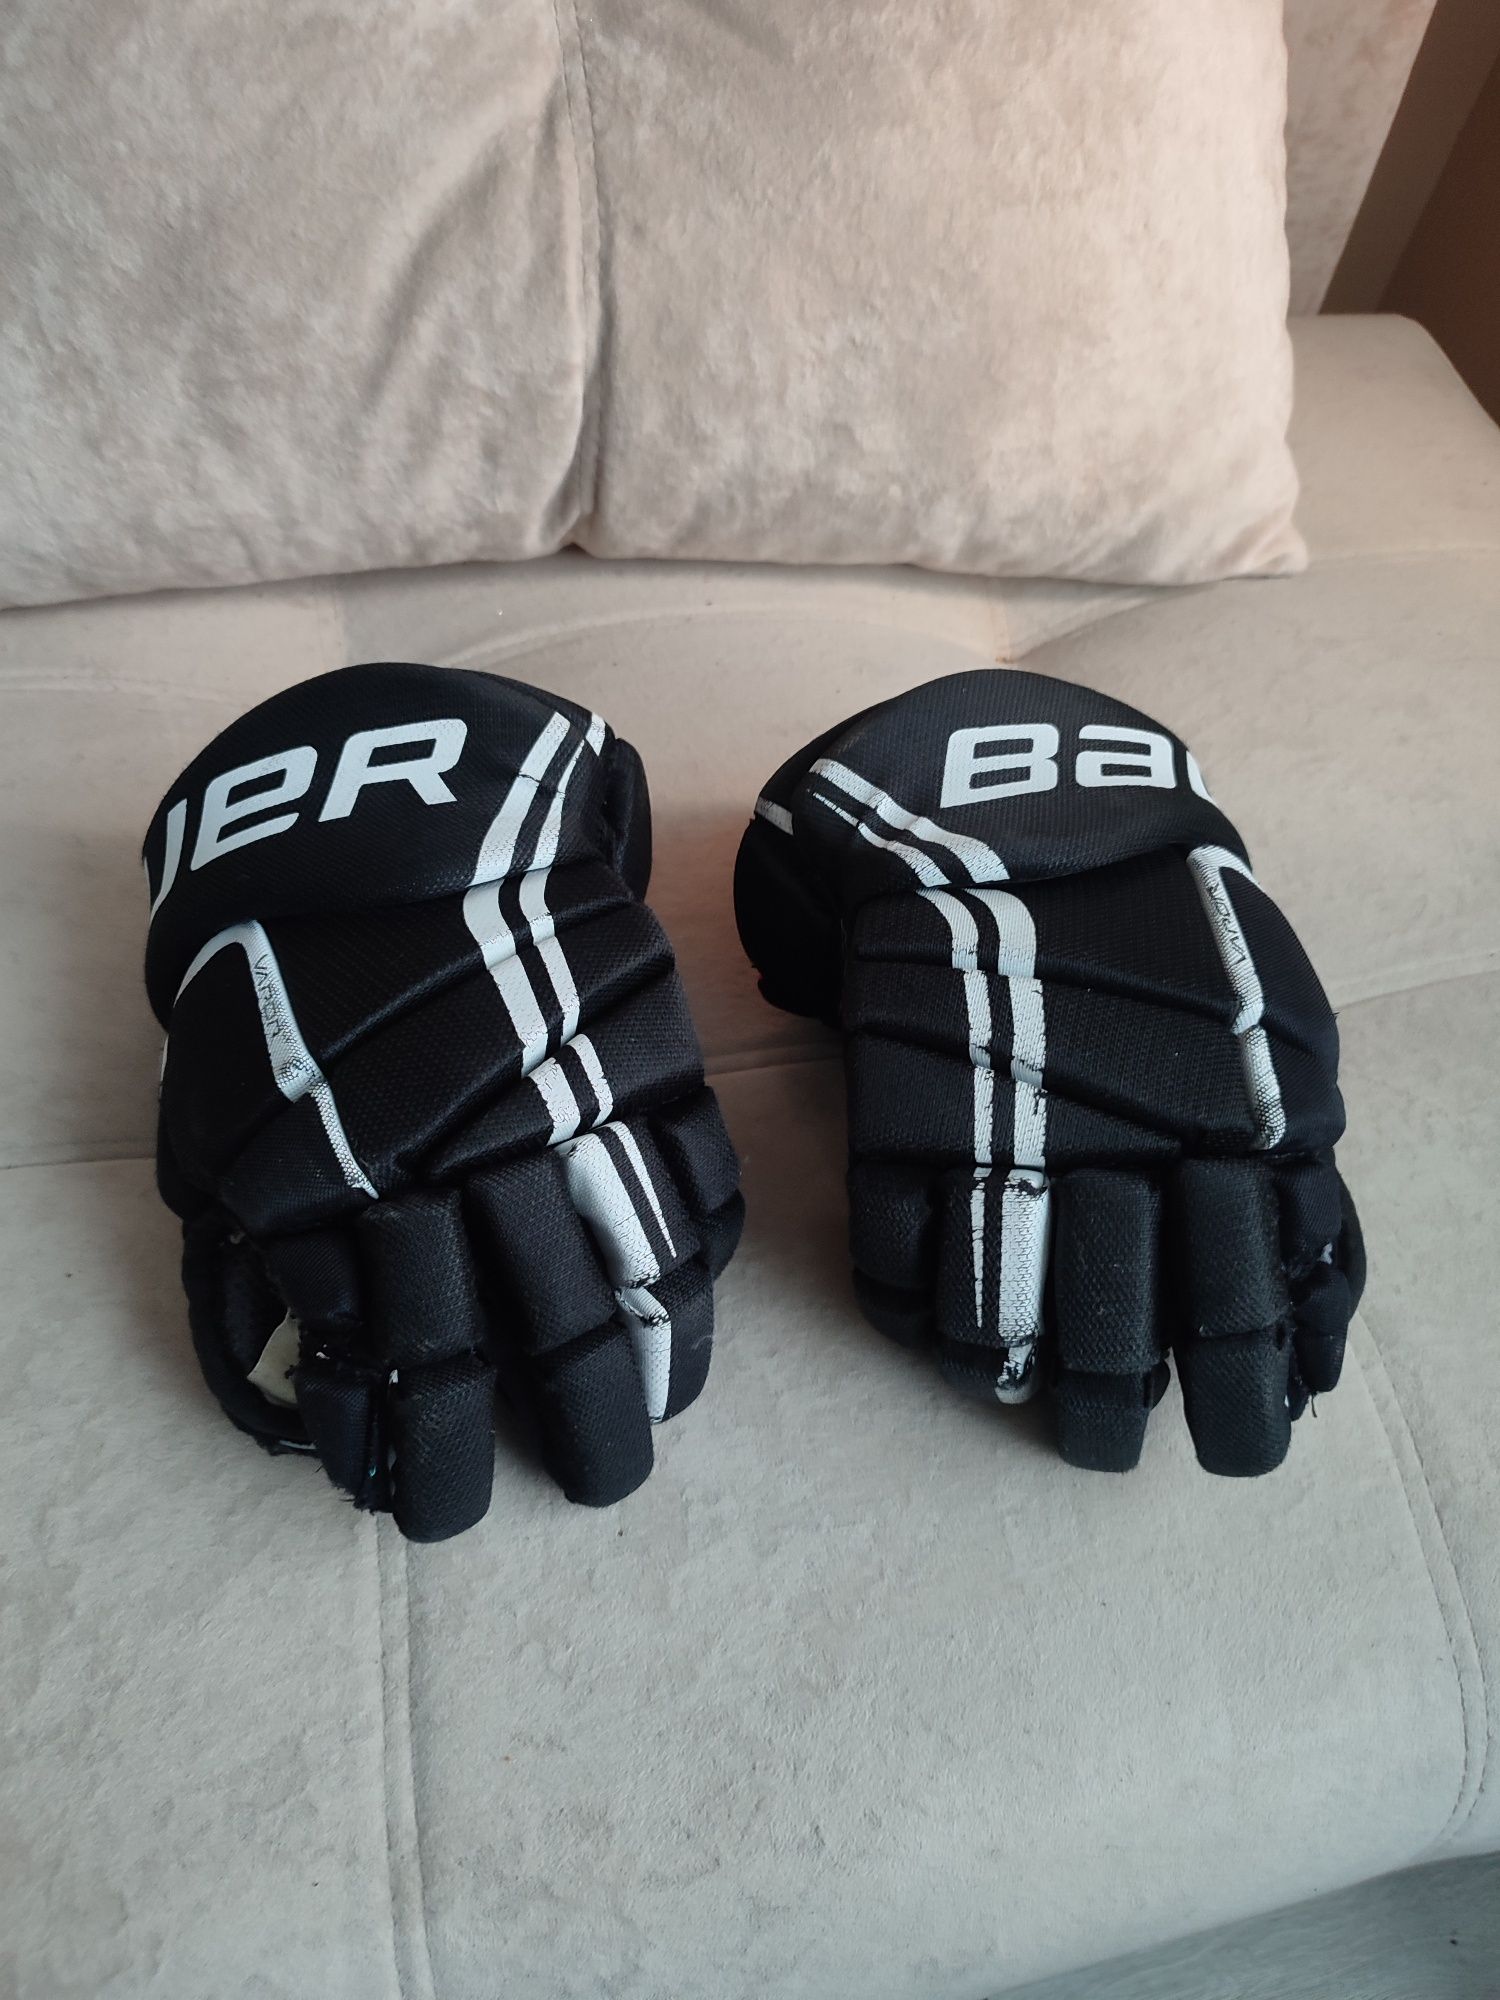 Продам хоккейные перчатки Bauer x 2.0 размер 13 б/у